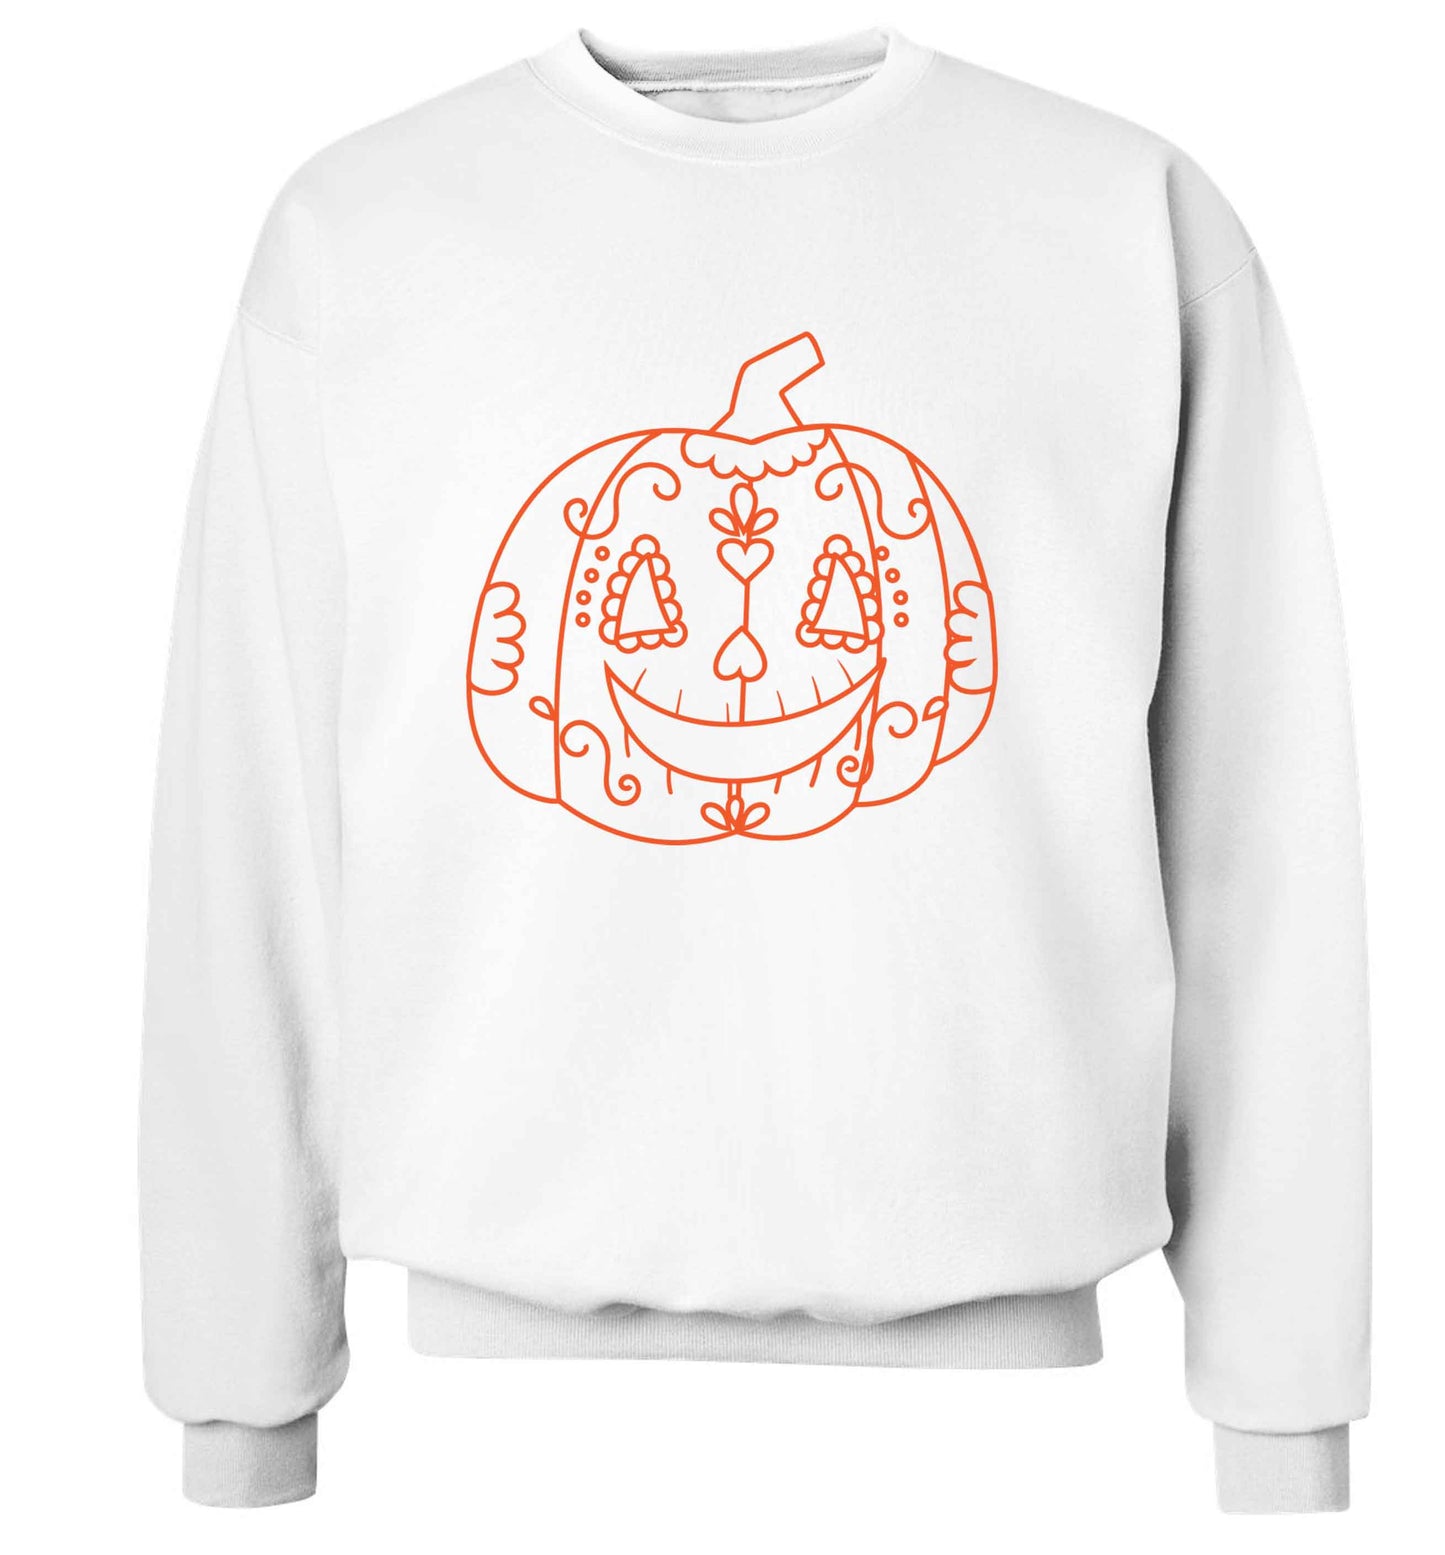 Pumpkin sugar skull adult's unisex white sweater 2XL